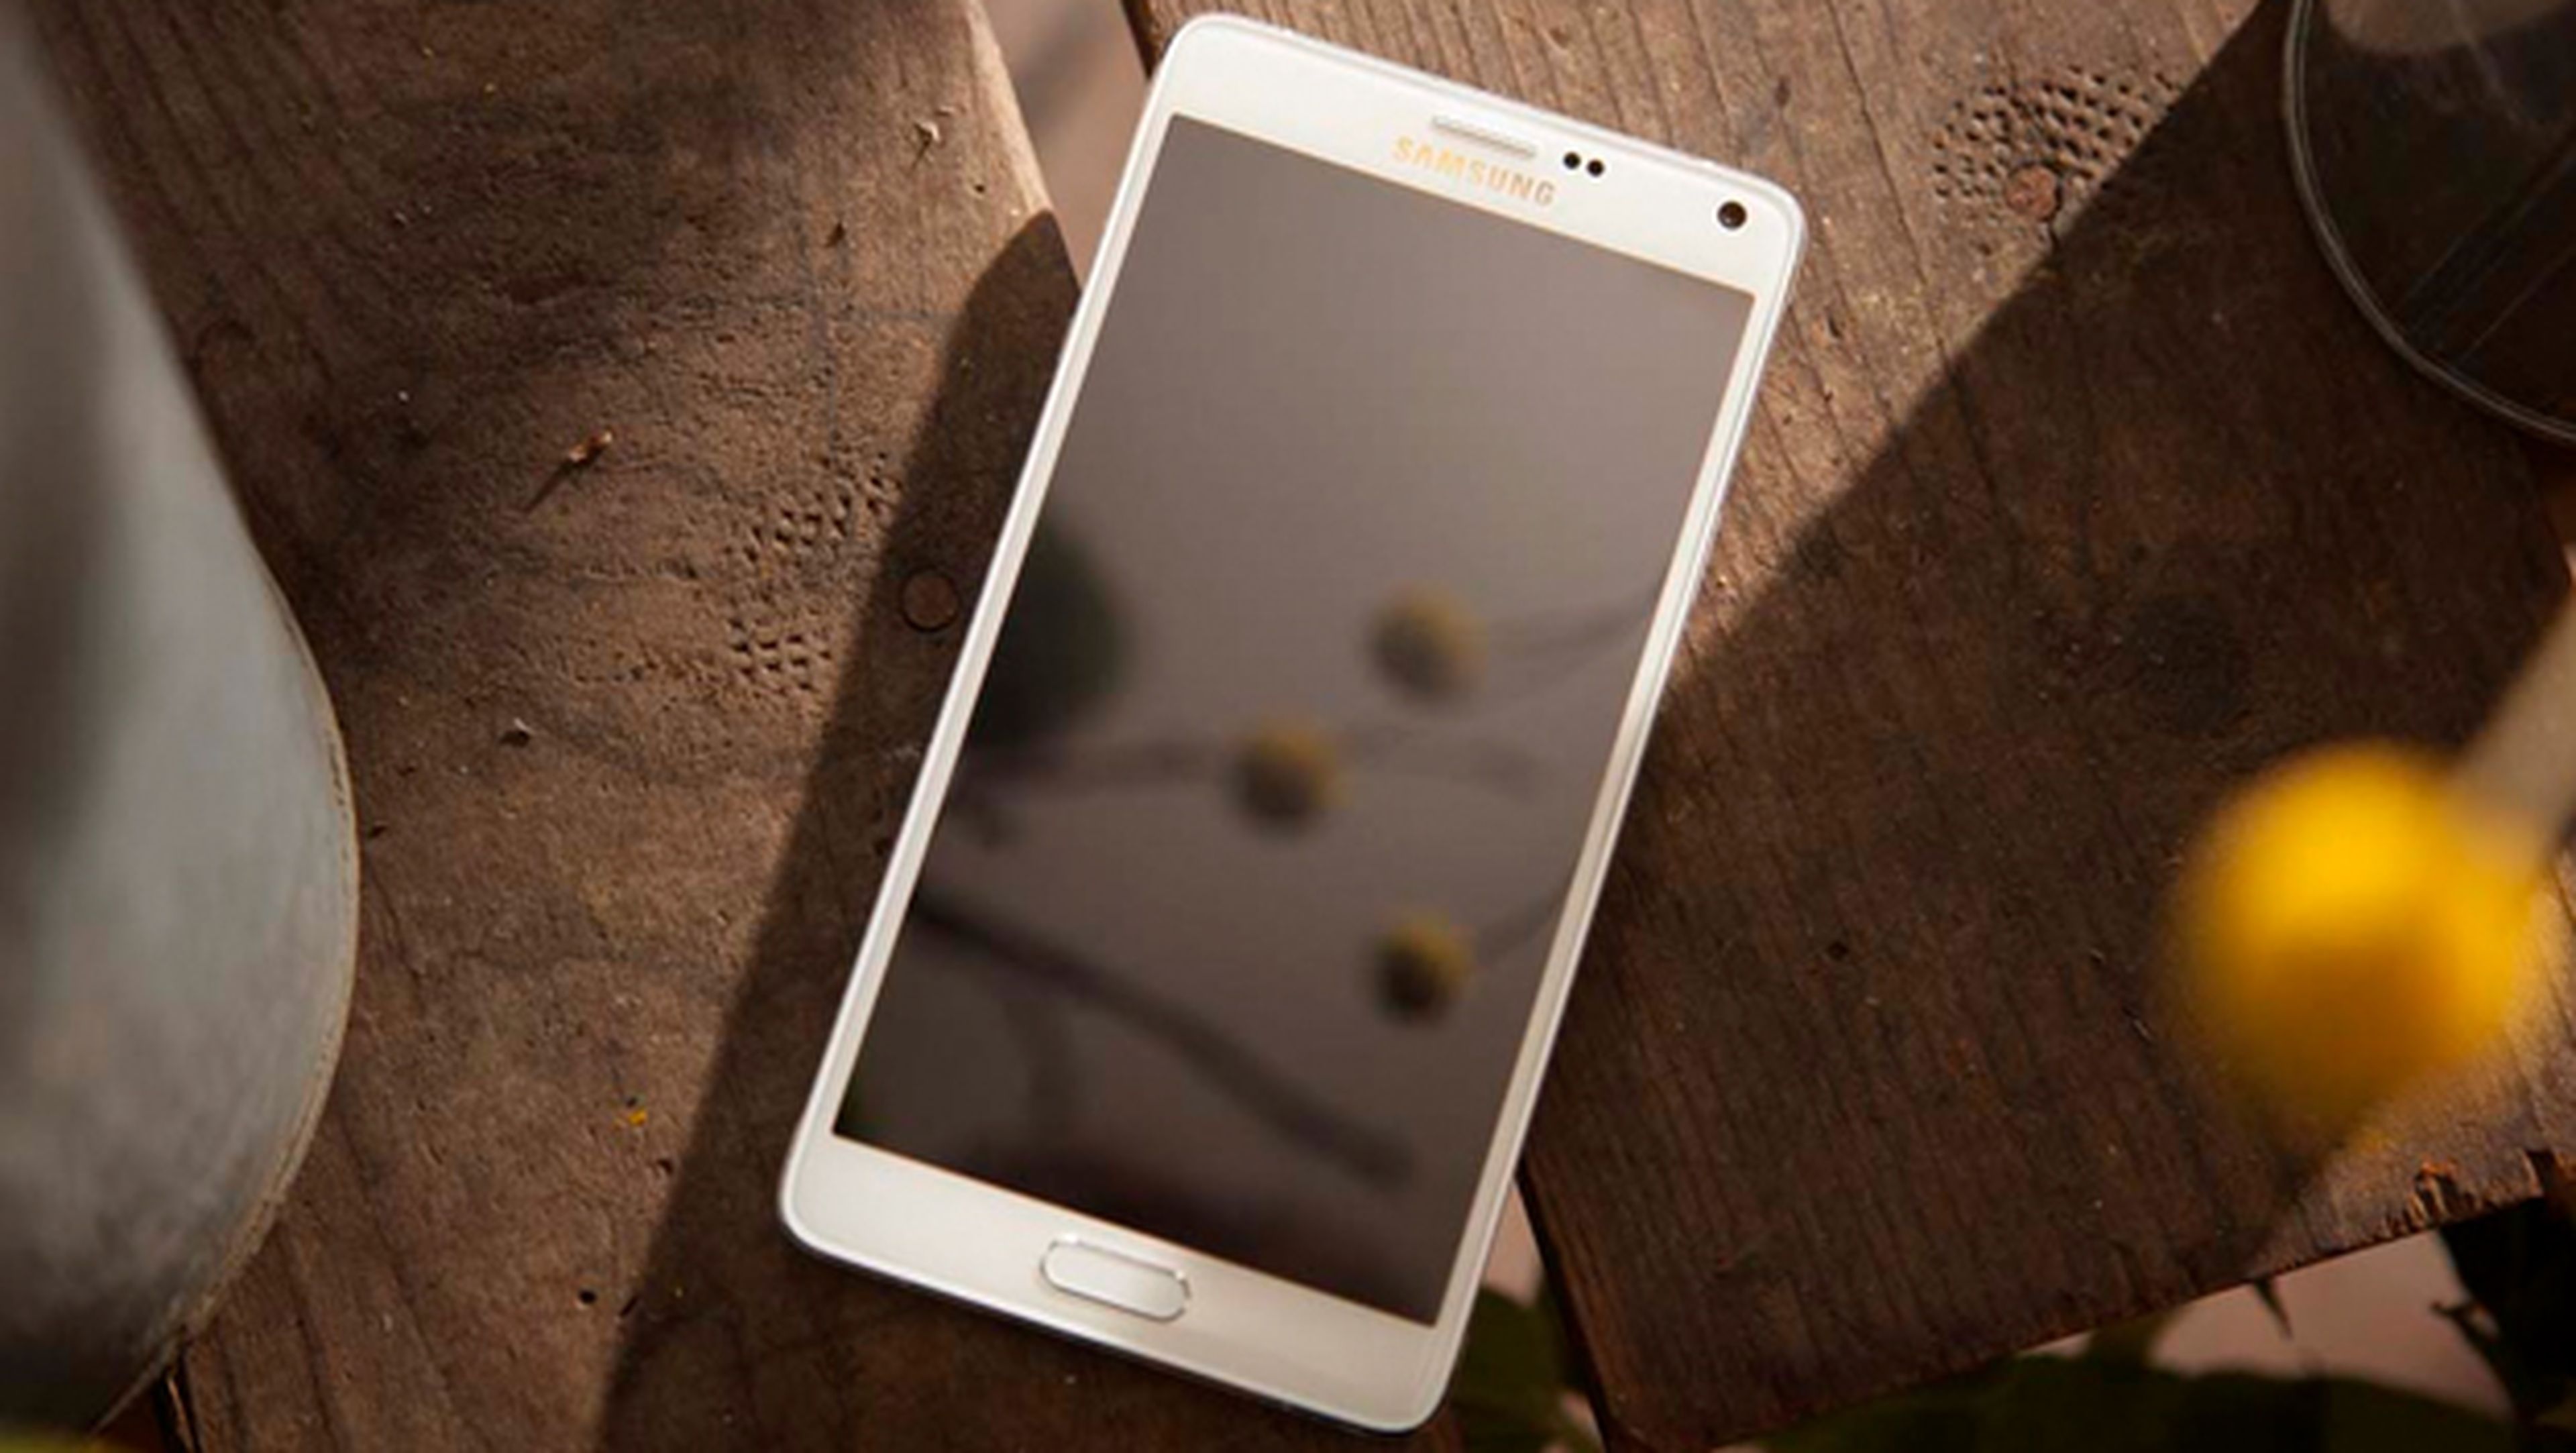 Galaxy Note 4 tiene la pantalla con mayor precisión de color